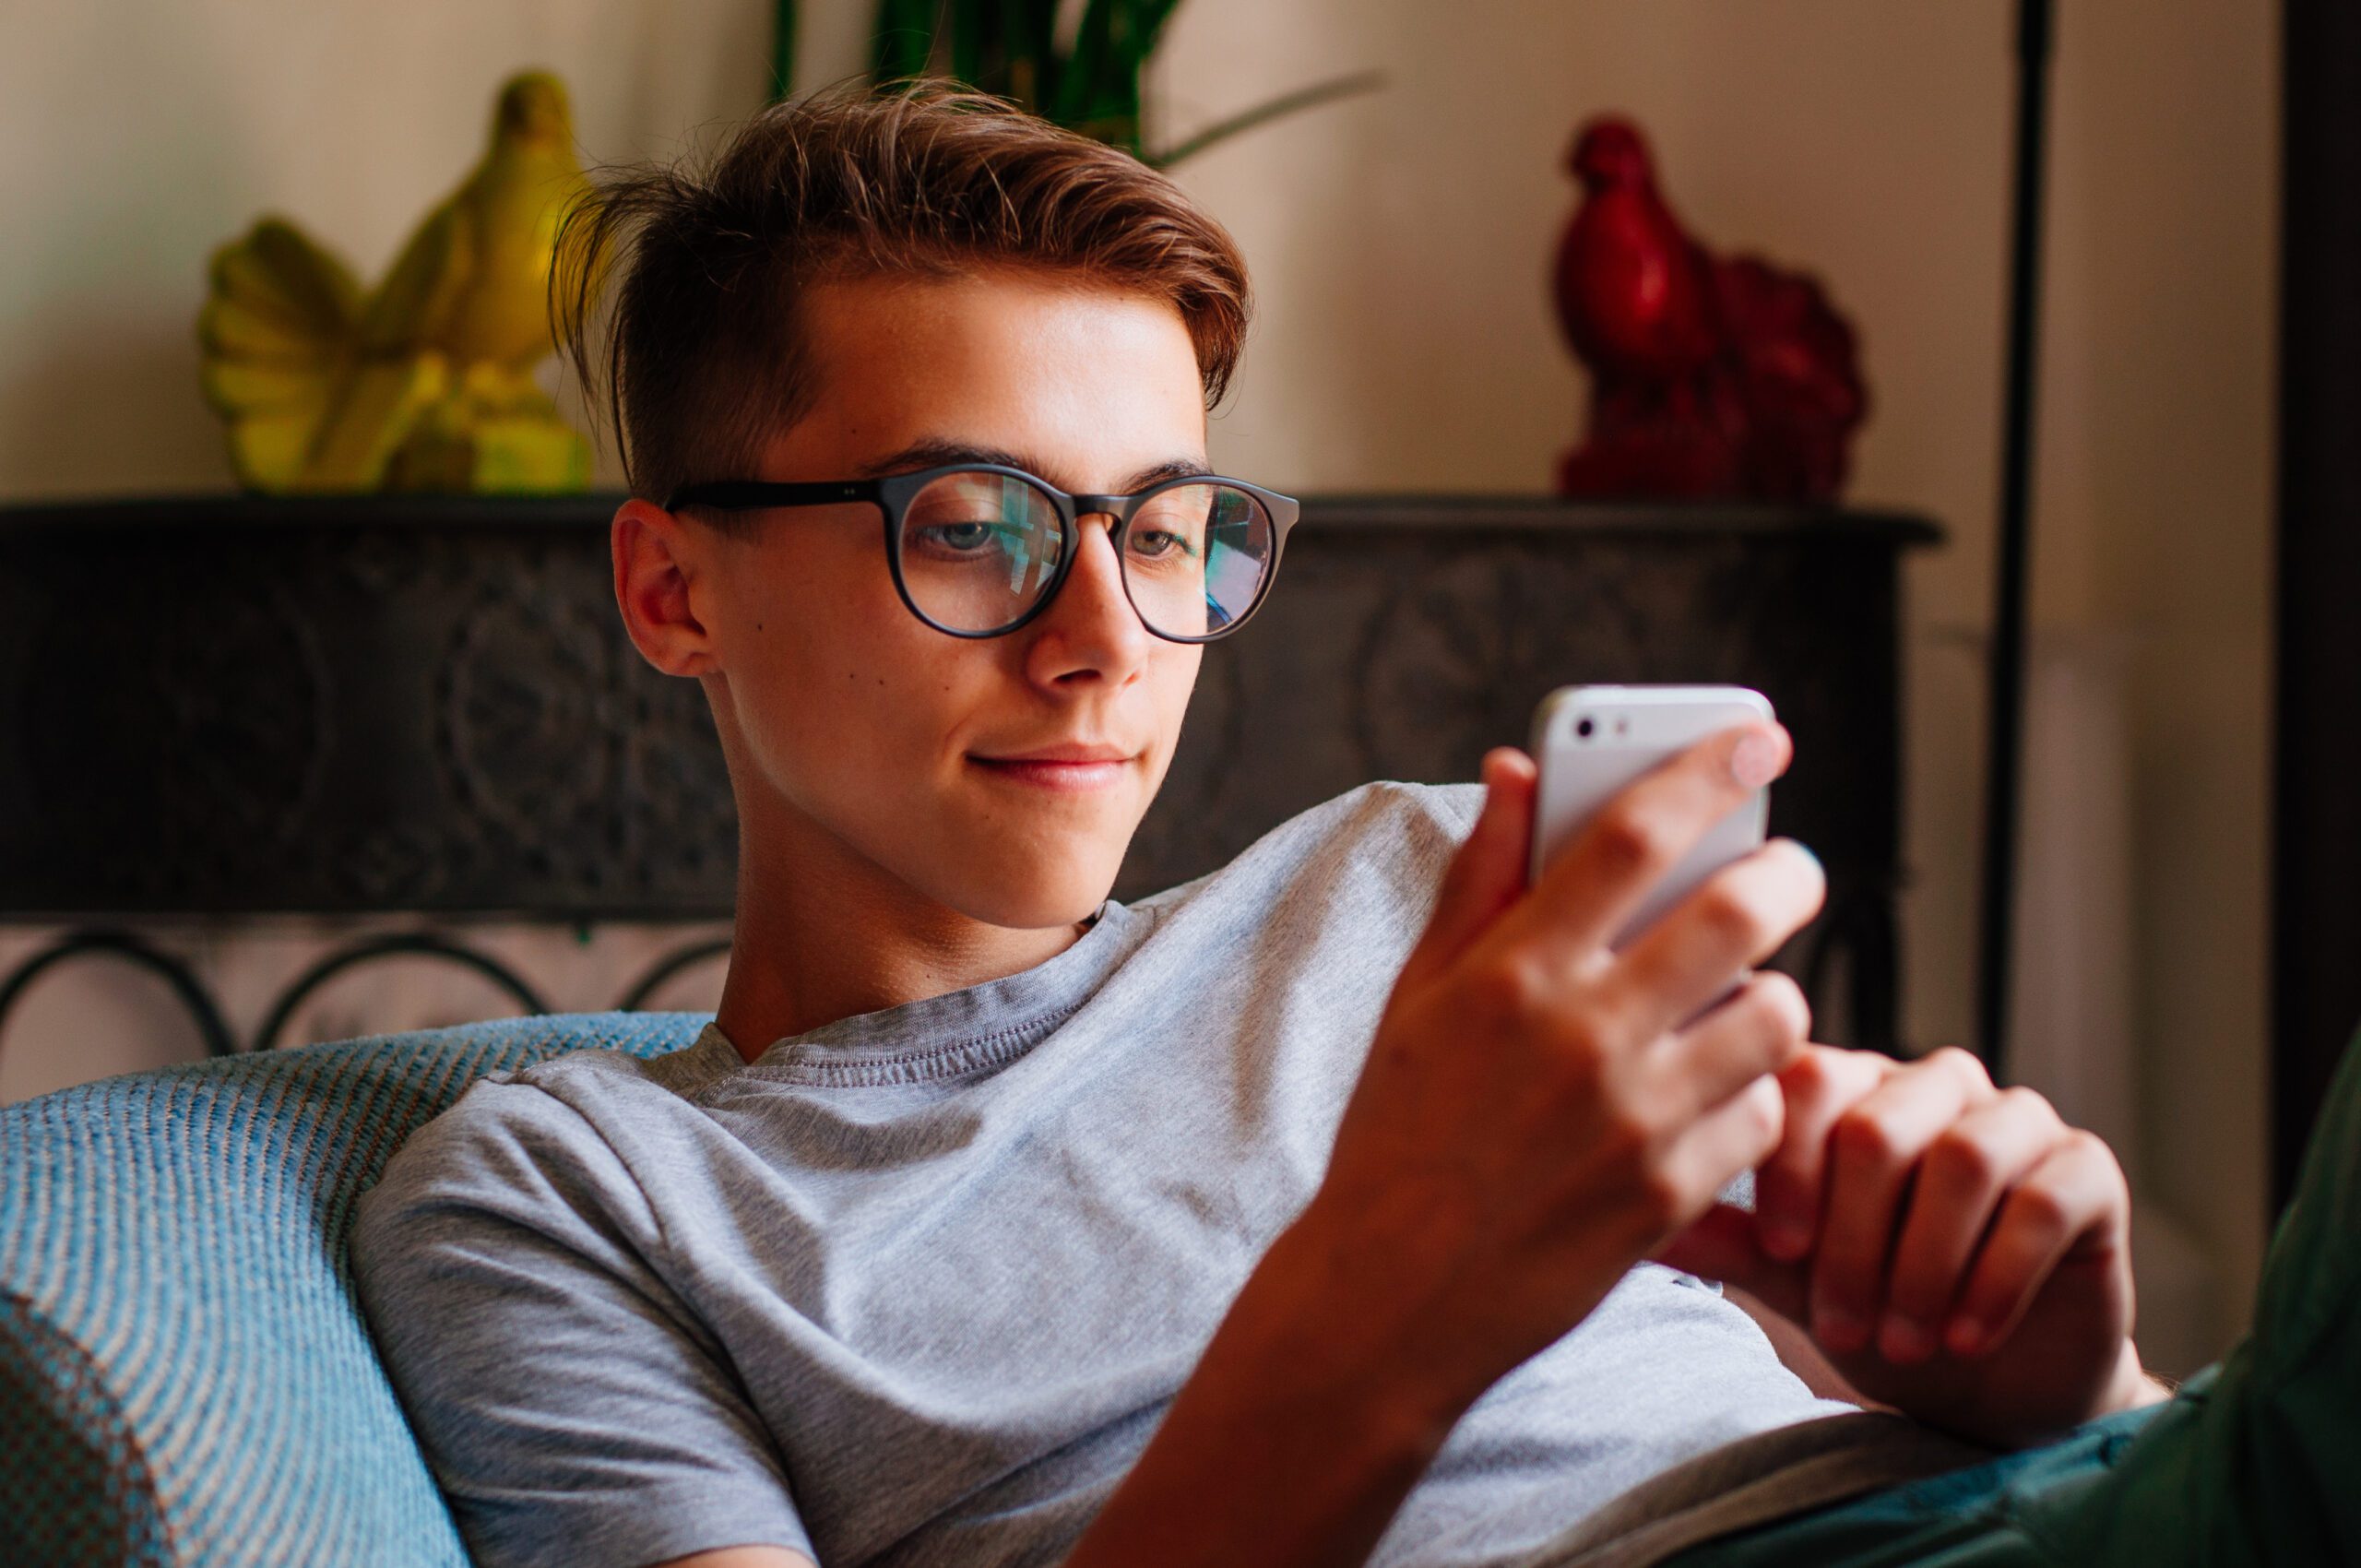 La génération Z hyperconnectée: les jeunes passent plus de 7 heures par jour sur leur téléphone